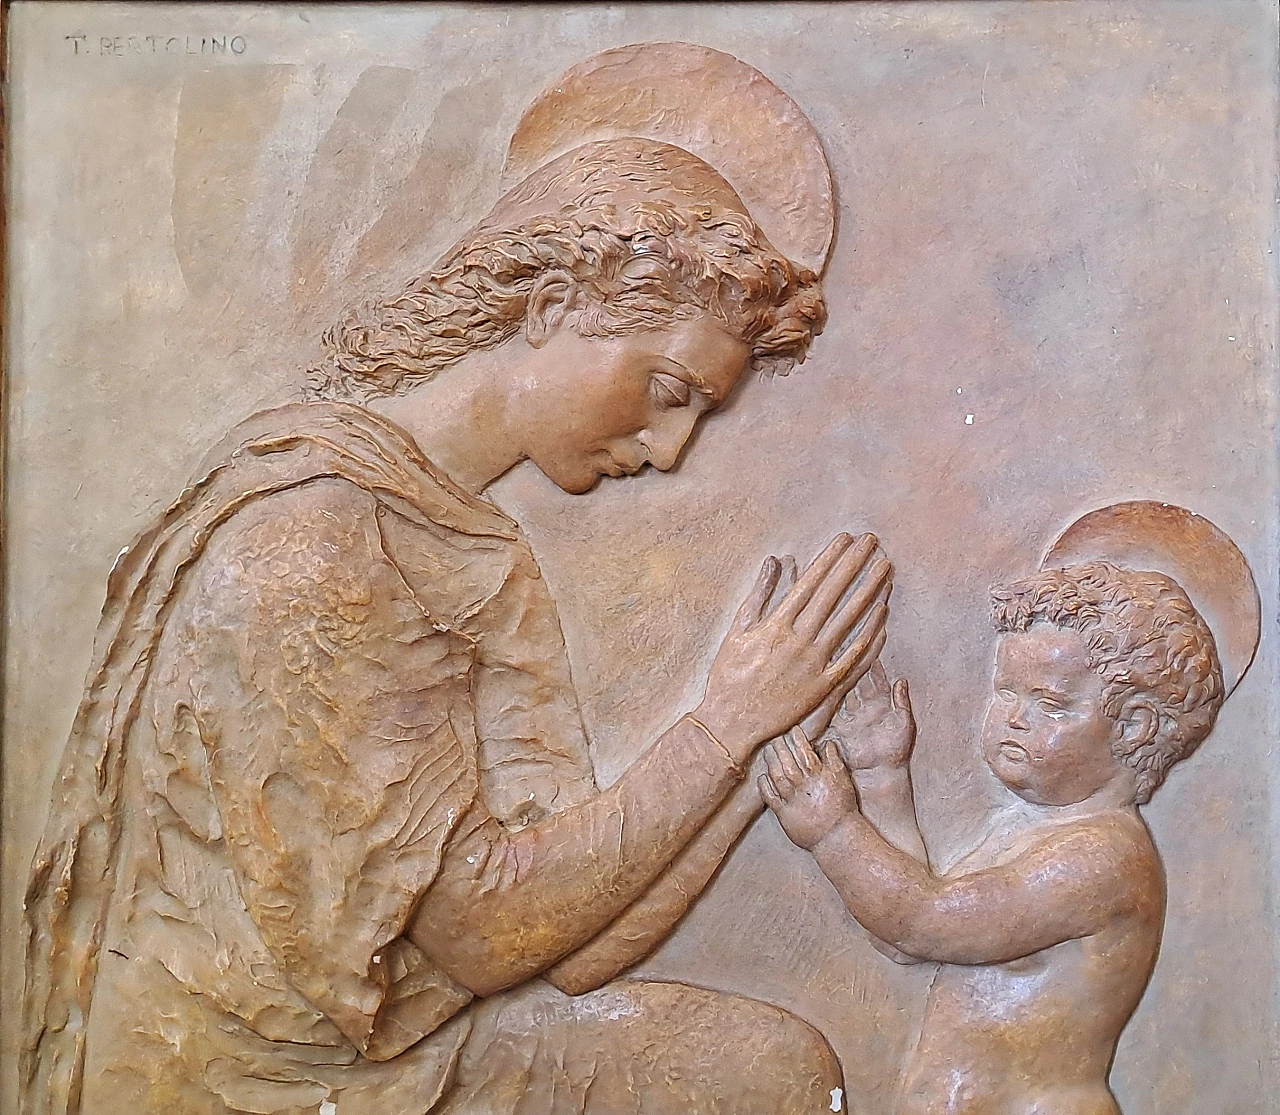 T. Bertolino, Madonna con bambino, bassorilievo in gesso, anni '40 2